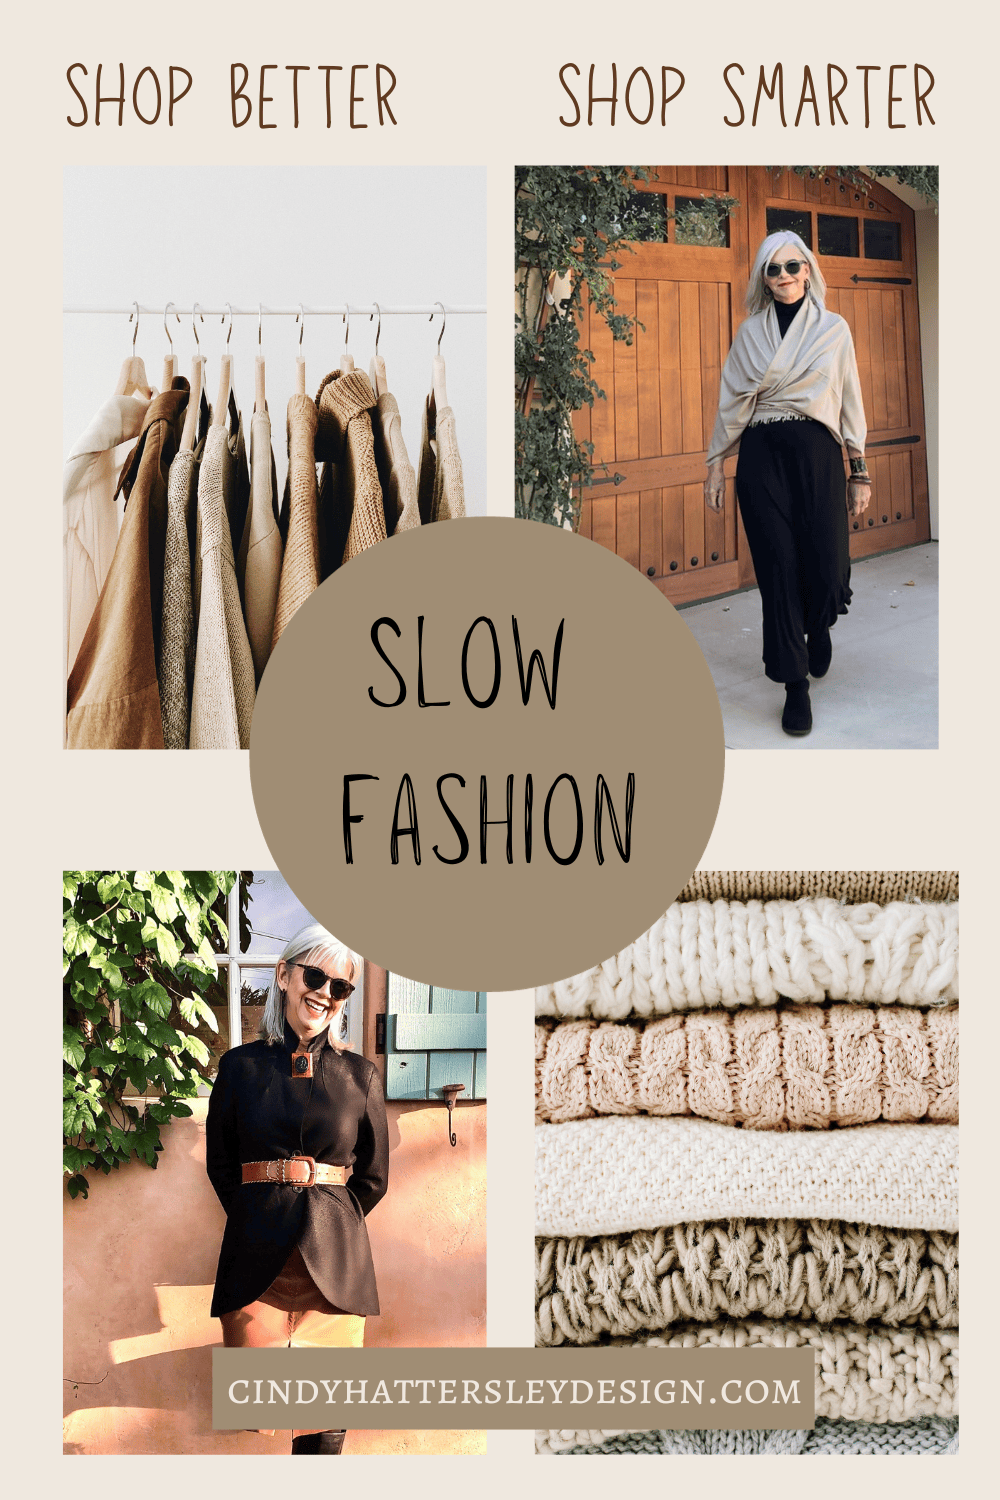 Slow Fashion -Show Better-Shop Smarter